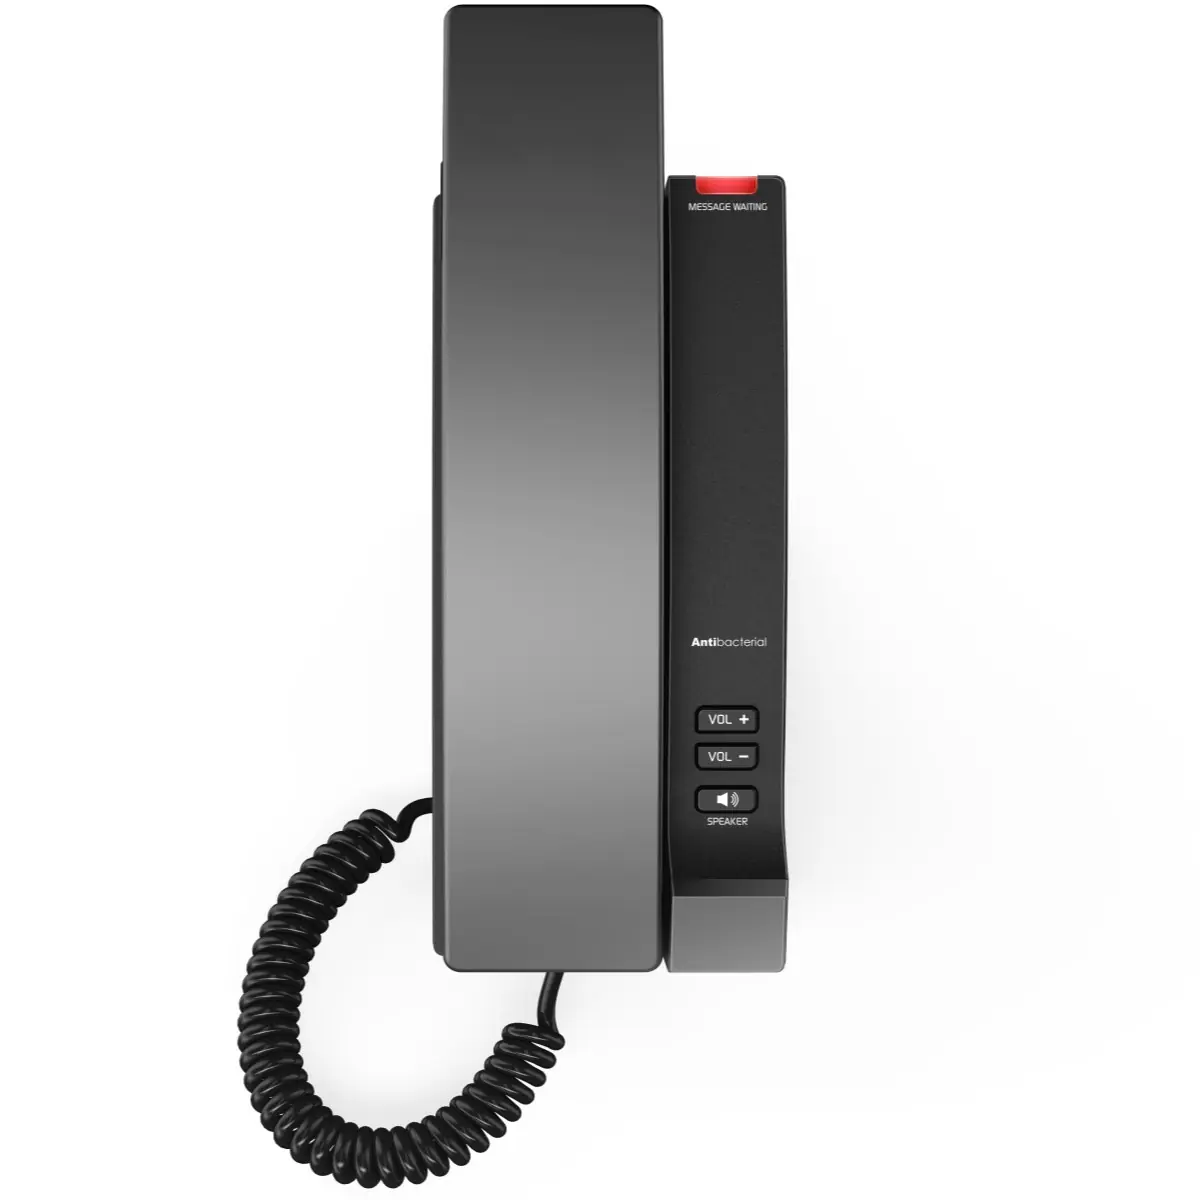 Téléphone filaire VTech à grosses touches avec afficheur et appel